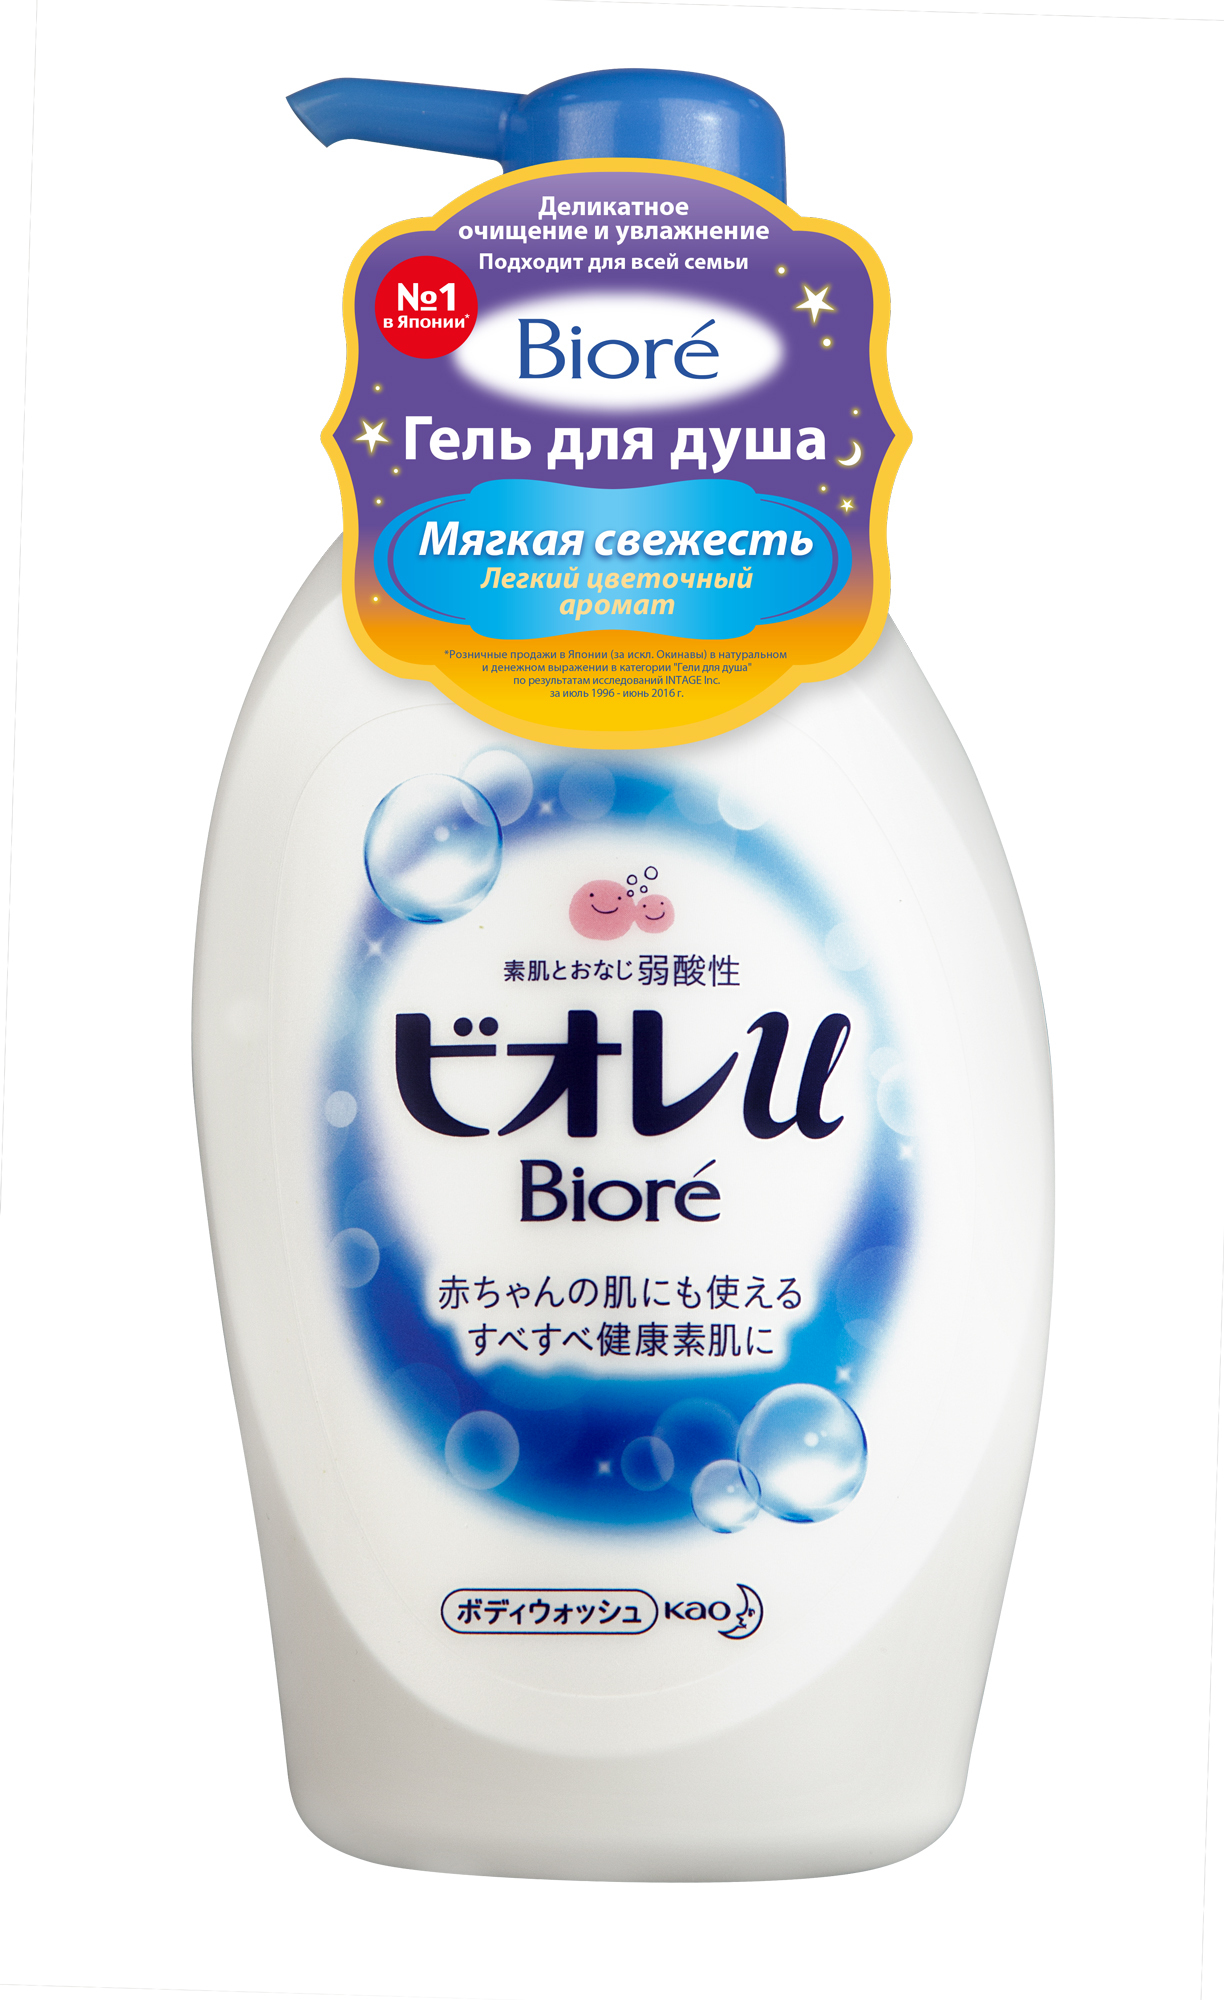 Жидкое мыло для душа с натуральными эссенциями, с ароматом свежести, Biore, 480 мл